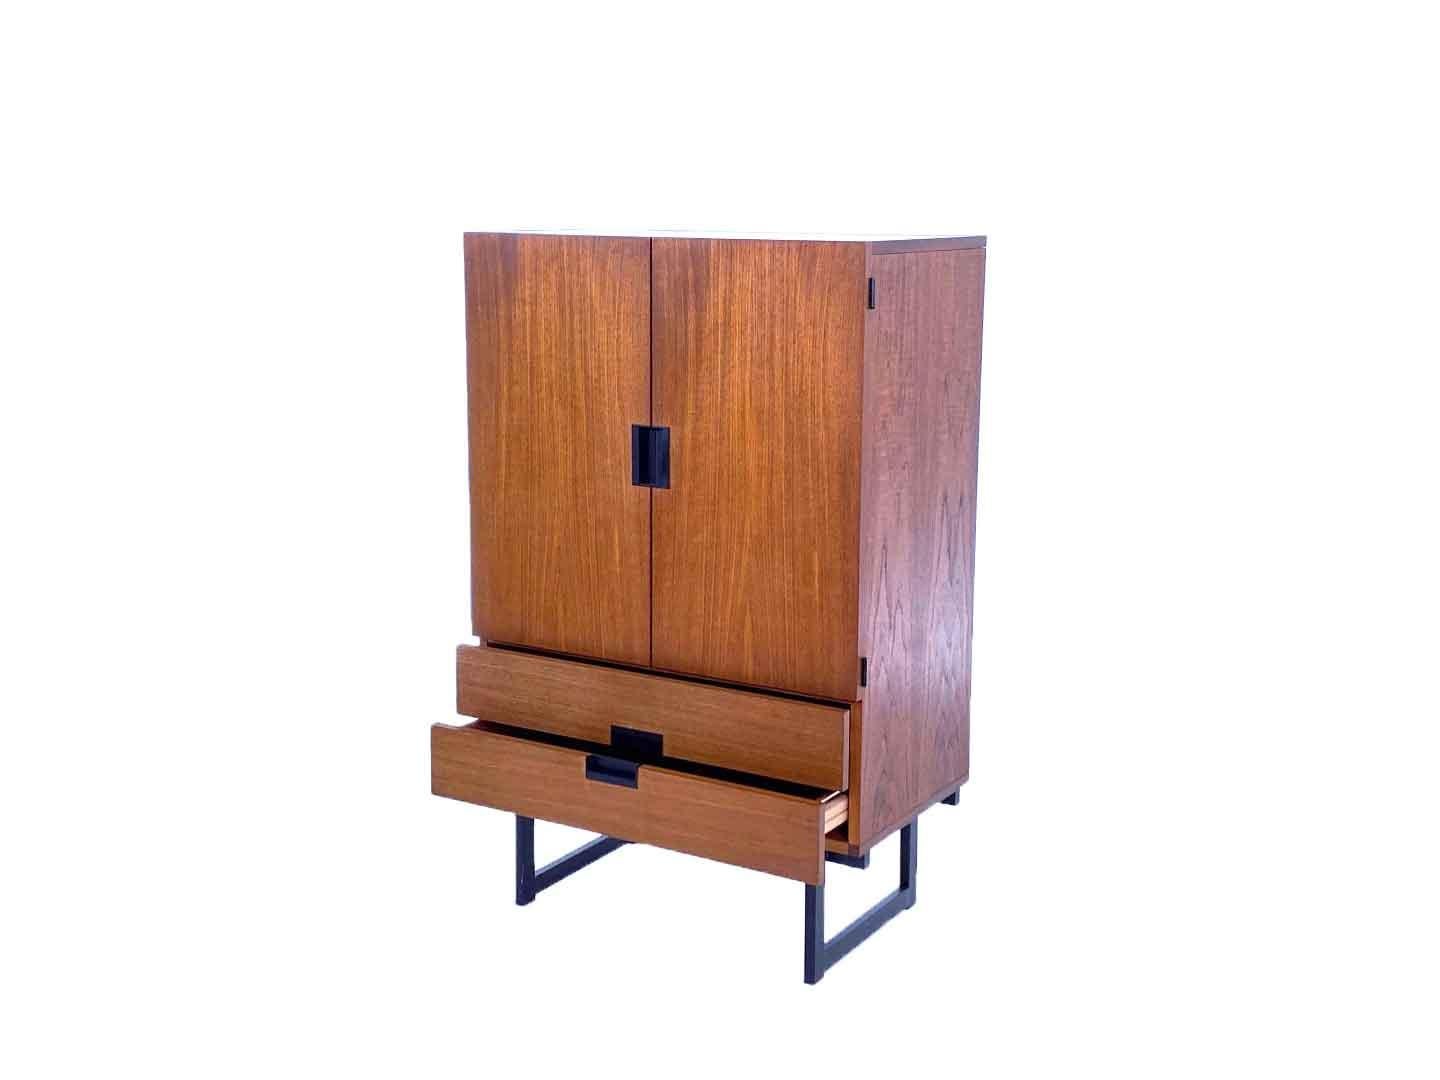 Dutch Vintage CU03 Cabinet by Cees Braakman, Pastoe, Japanese Series, 1958